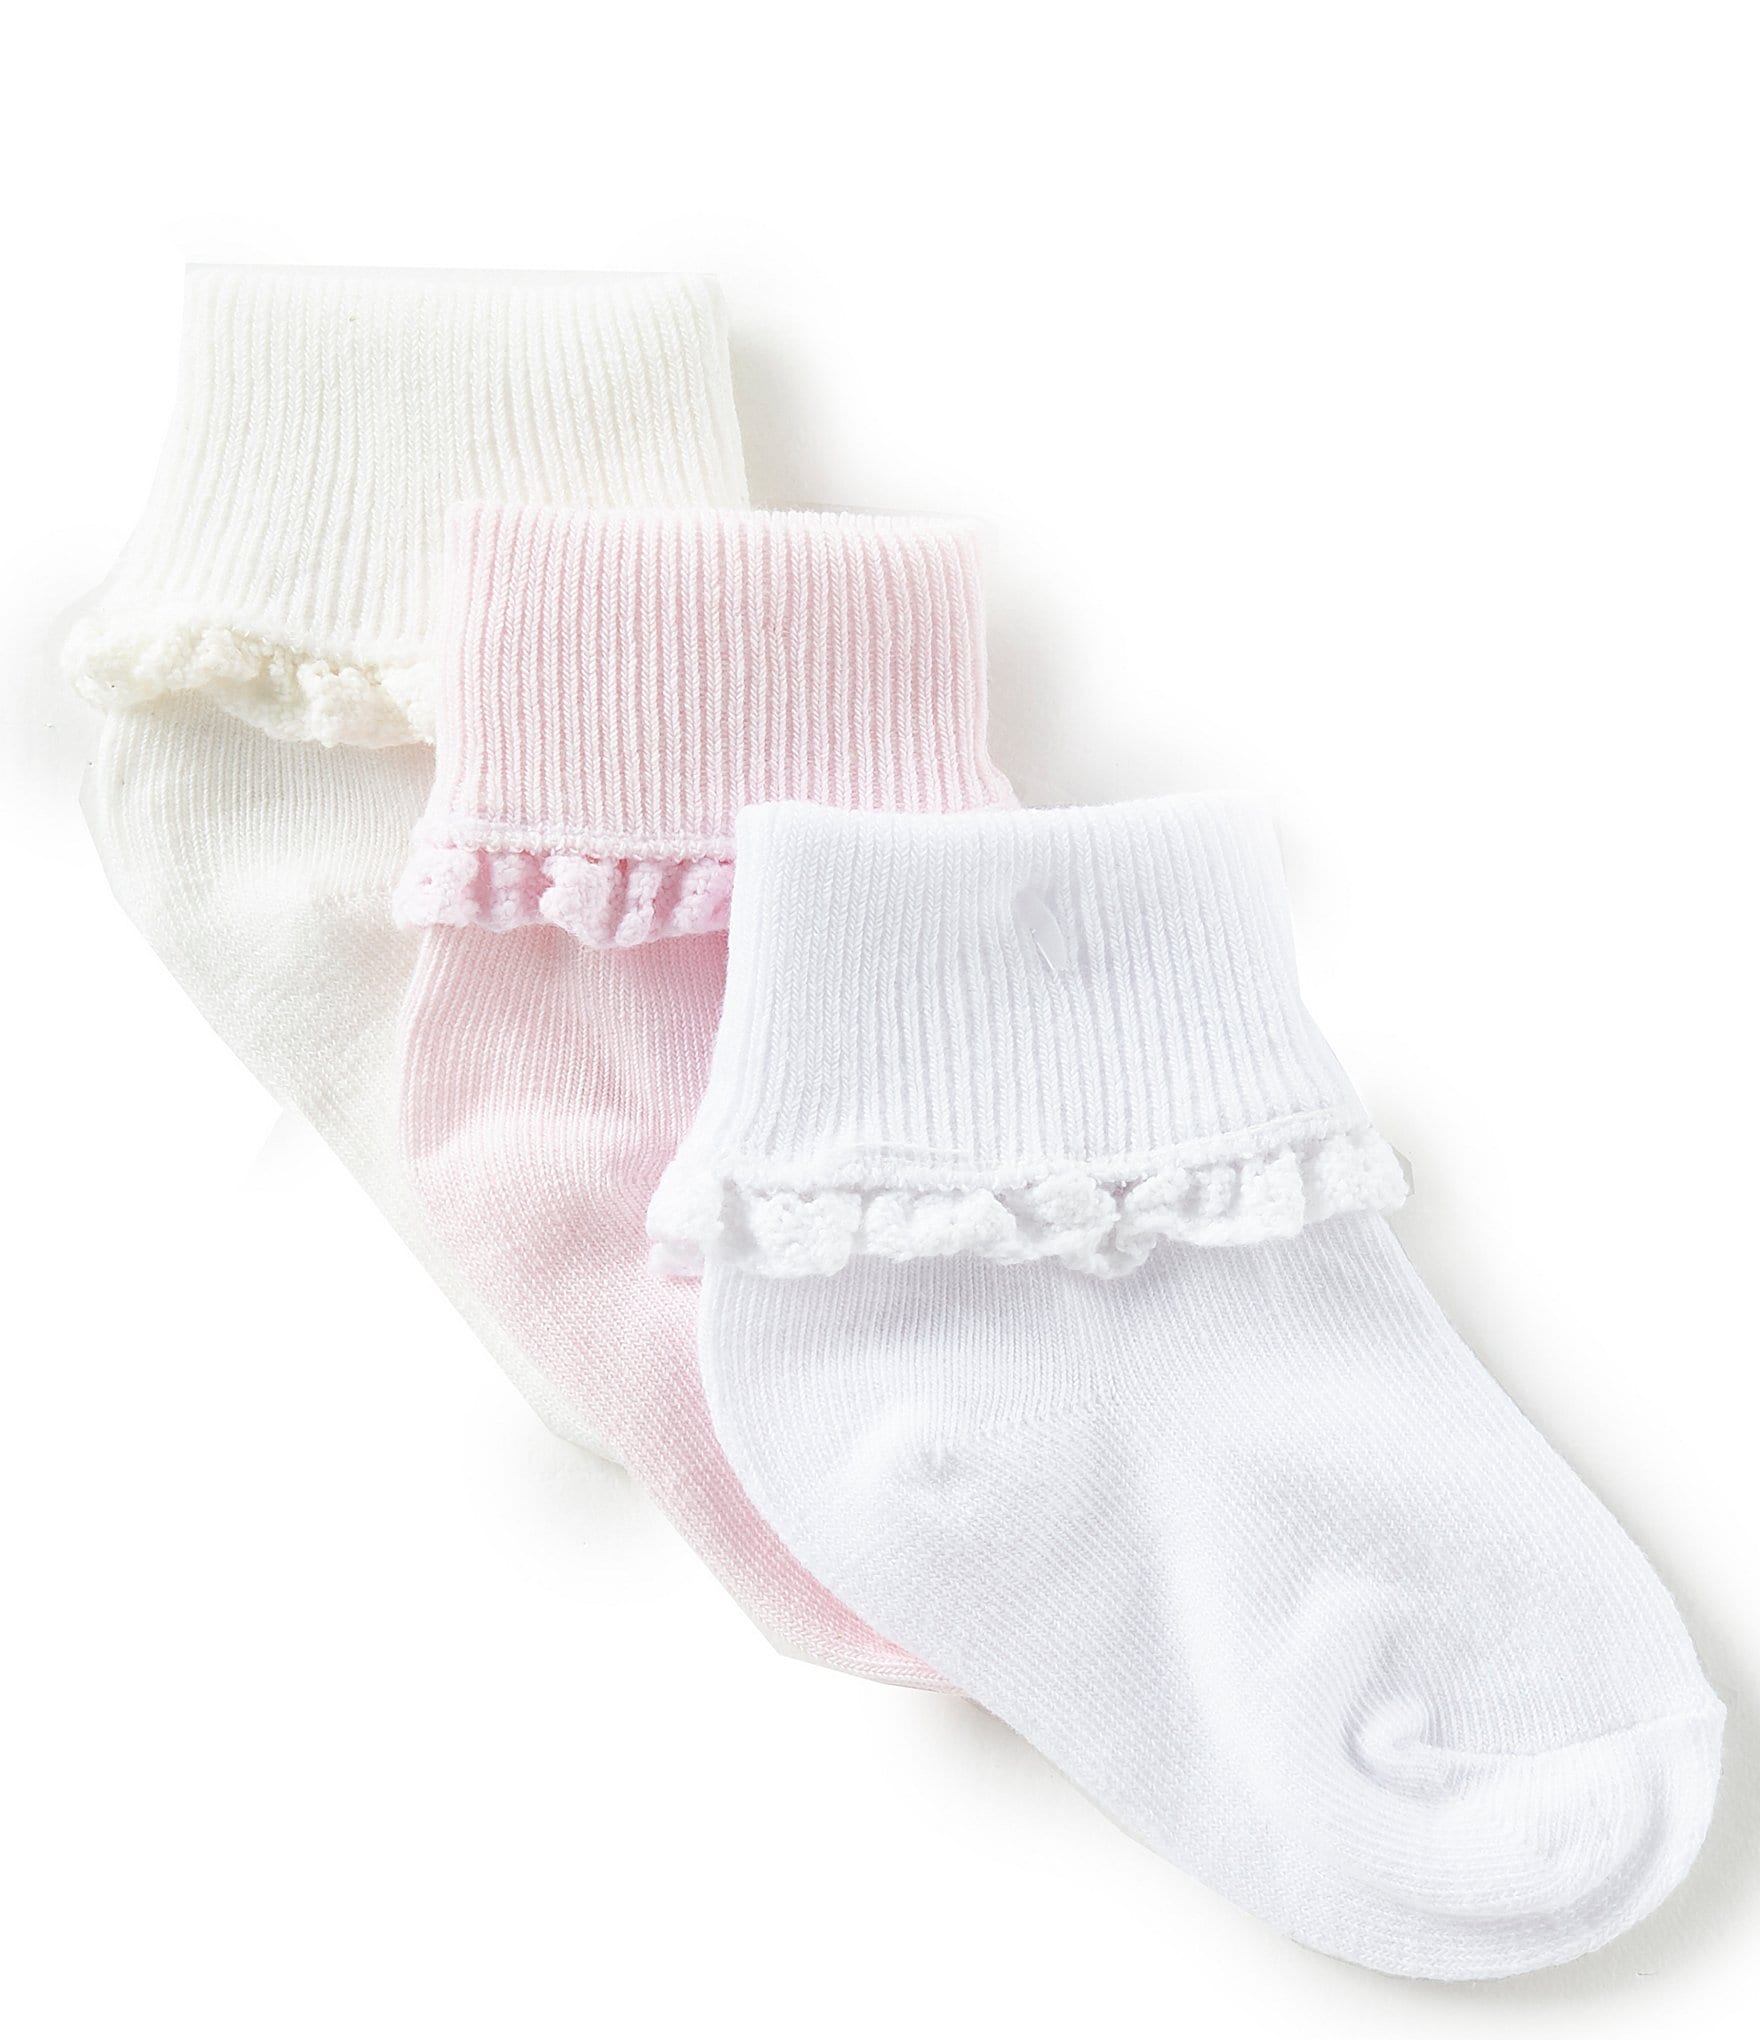 socks Baby Girl socks 3 PAIRS*Toddler socks & Infant Socks Grips Floor Safety baby Newborn Kleding Meisjeskleding Babykleding voor meisjes Sokken & Beenwarmers 